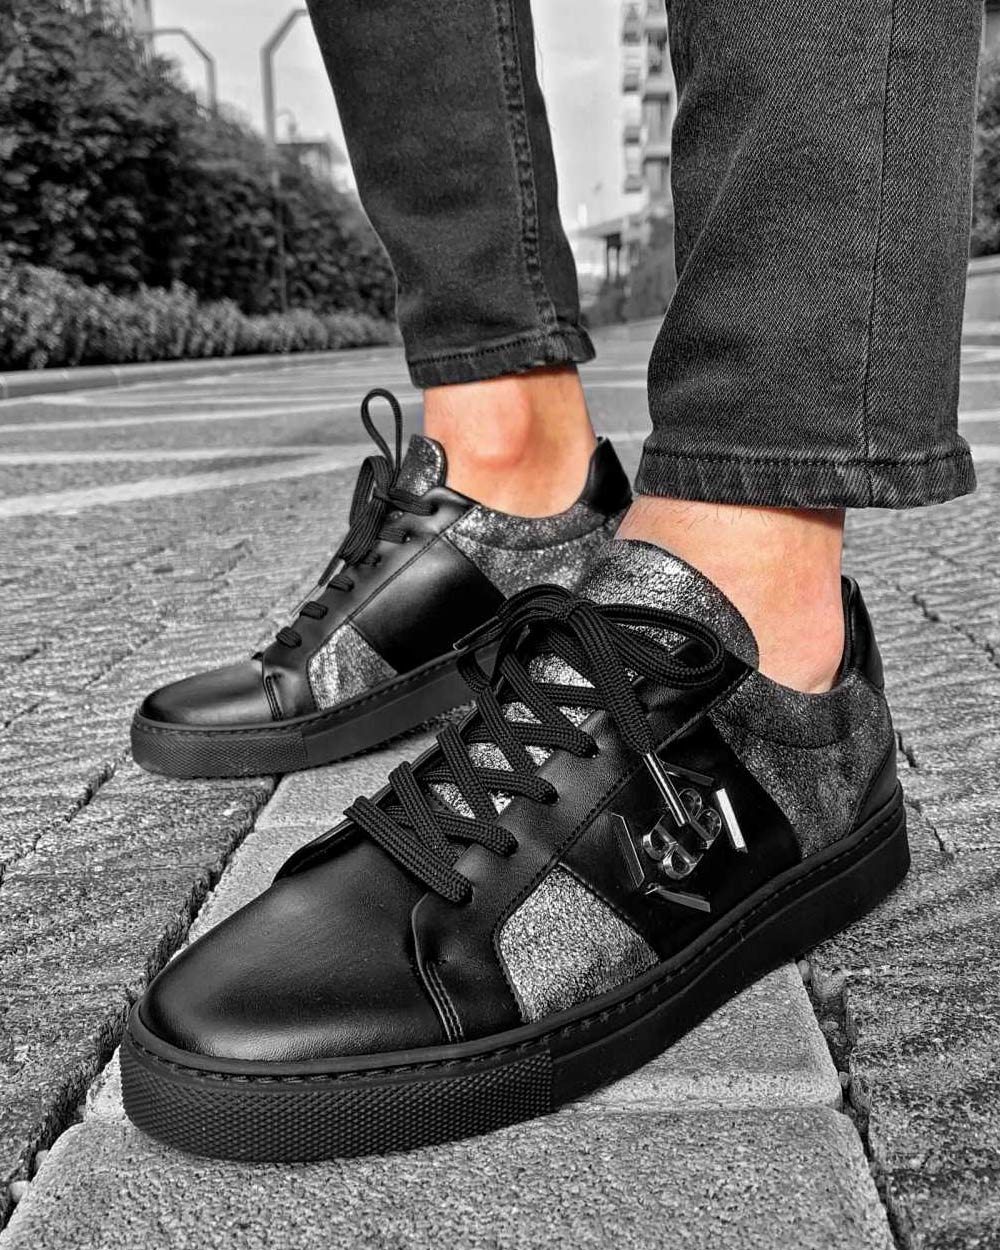 Chaussures Sneakers noires aspect argenté métallique gris noir avec logo pour homme